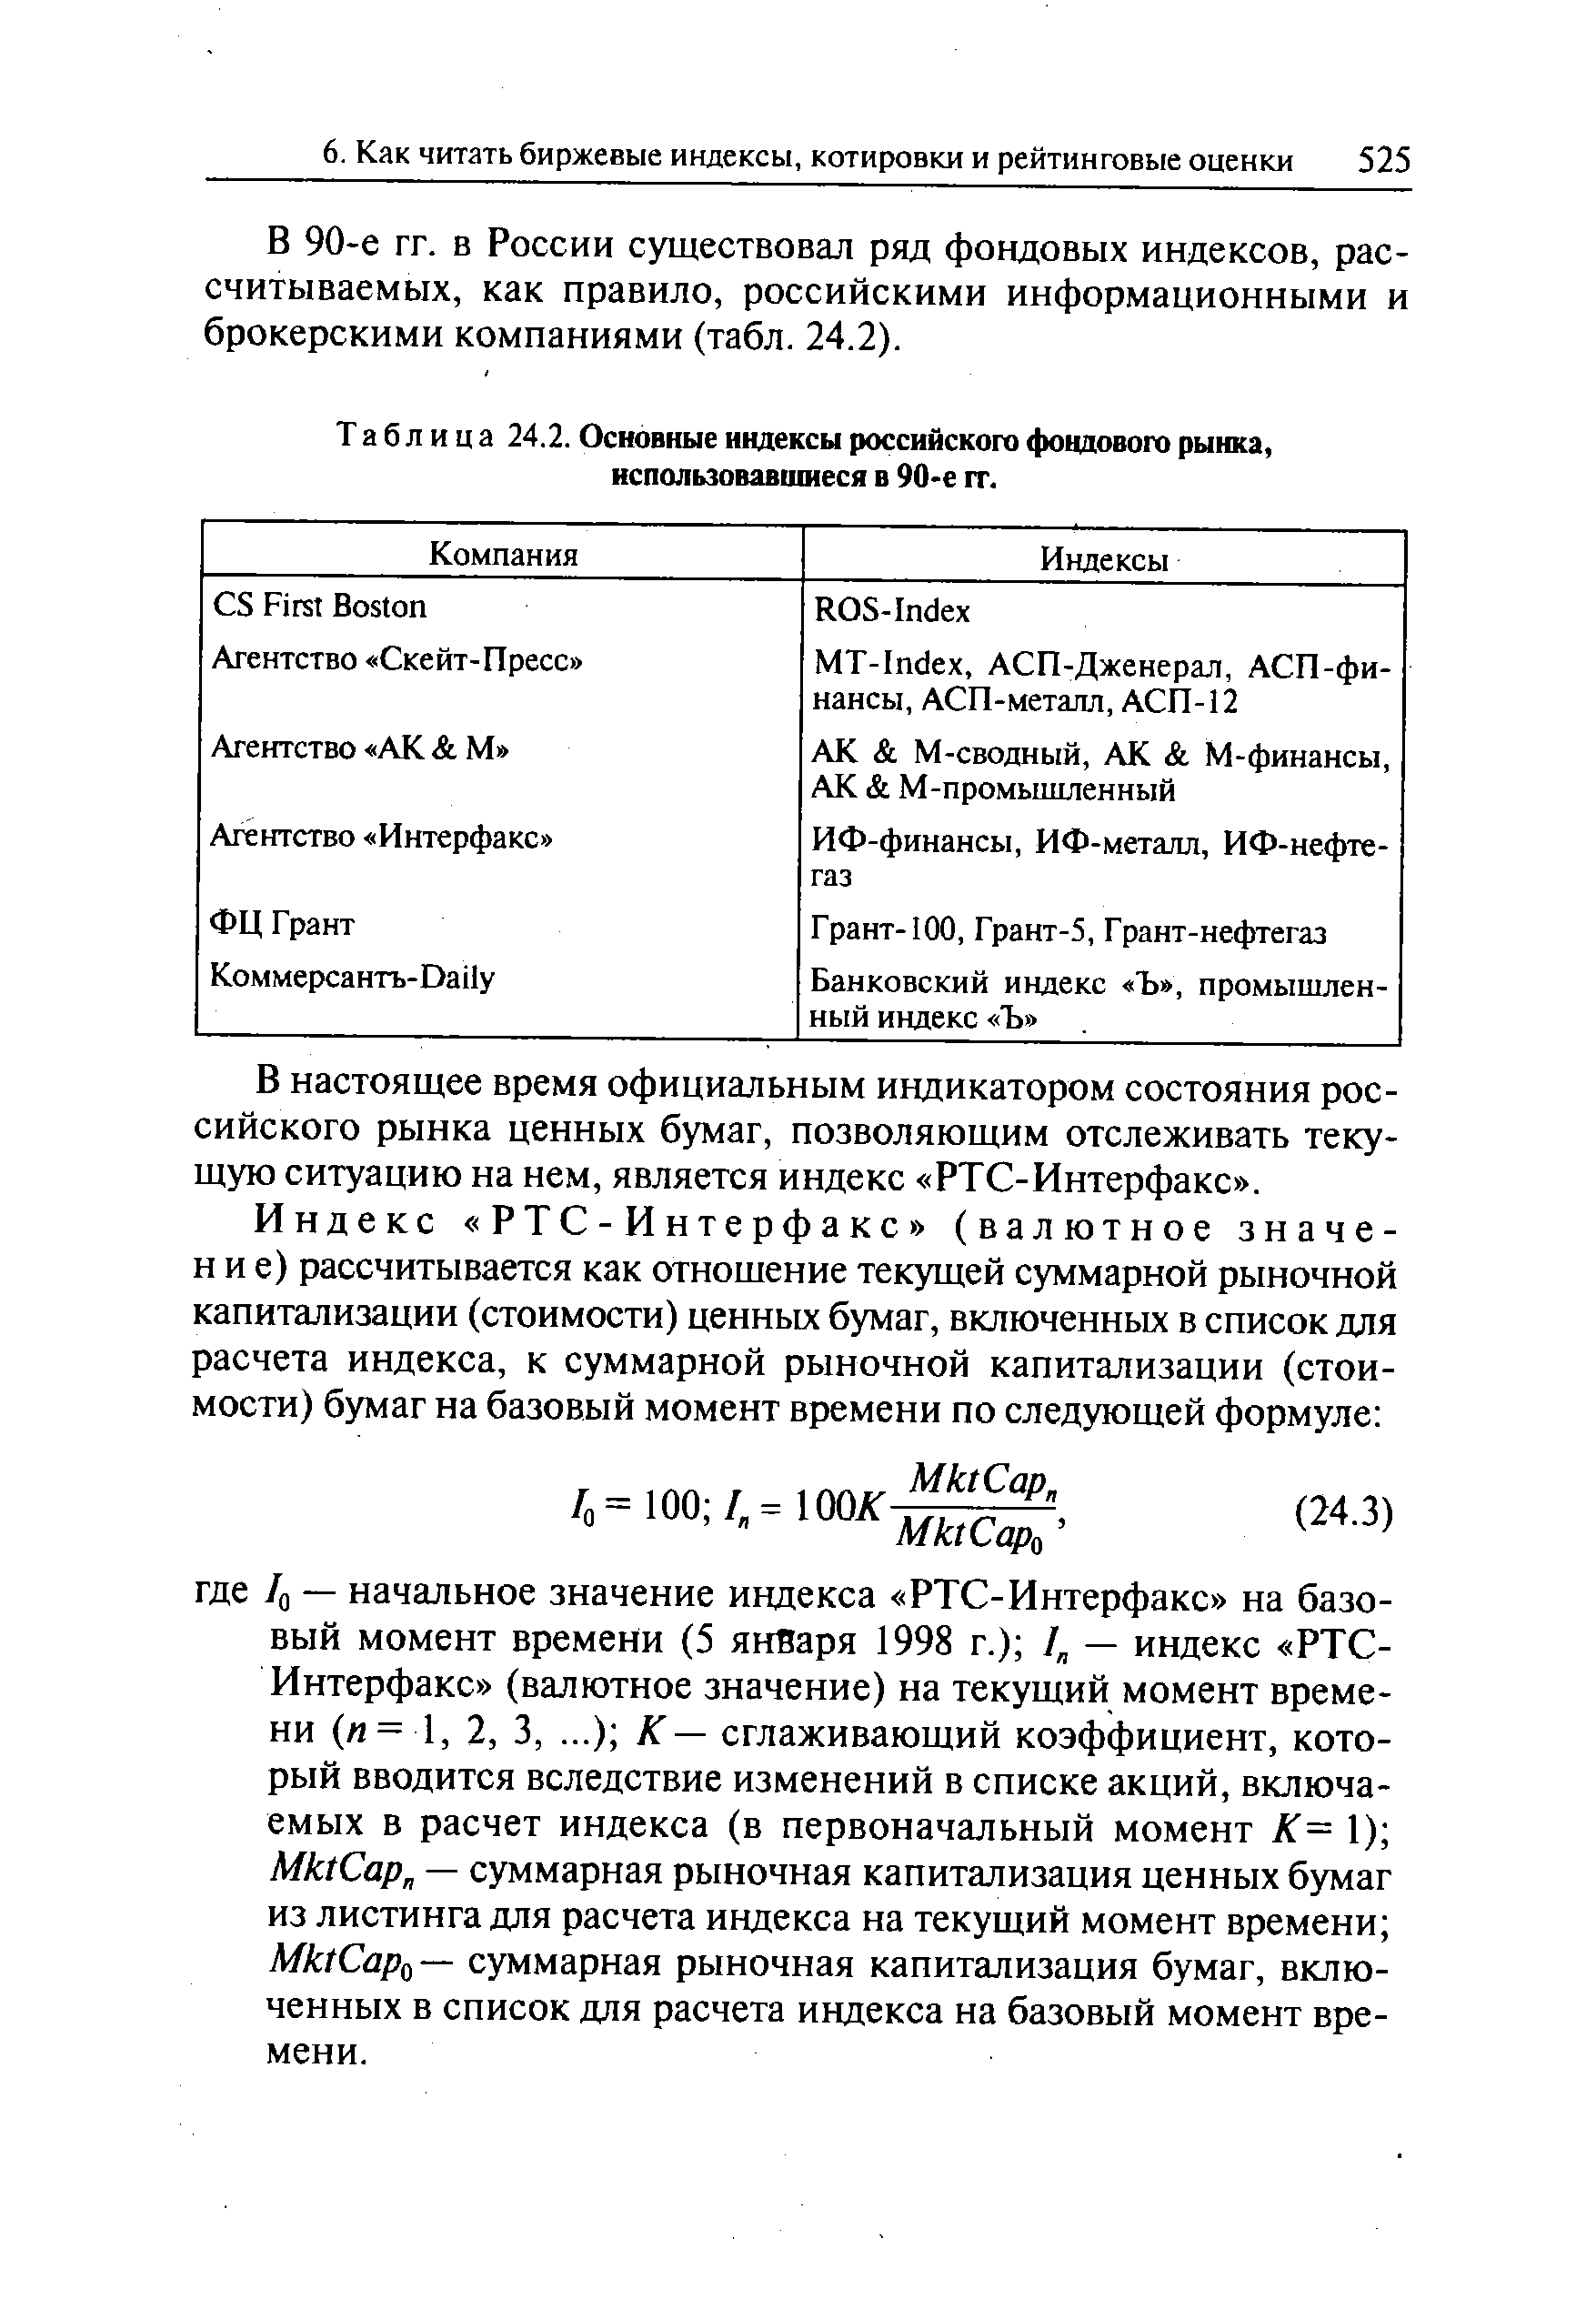 Таблица 24.2. Основные индексы российского фондового рынка, использовавшиеся в 90-е гг.
